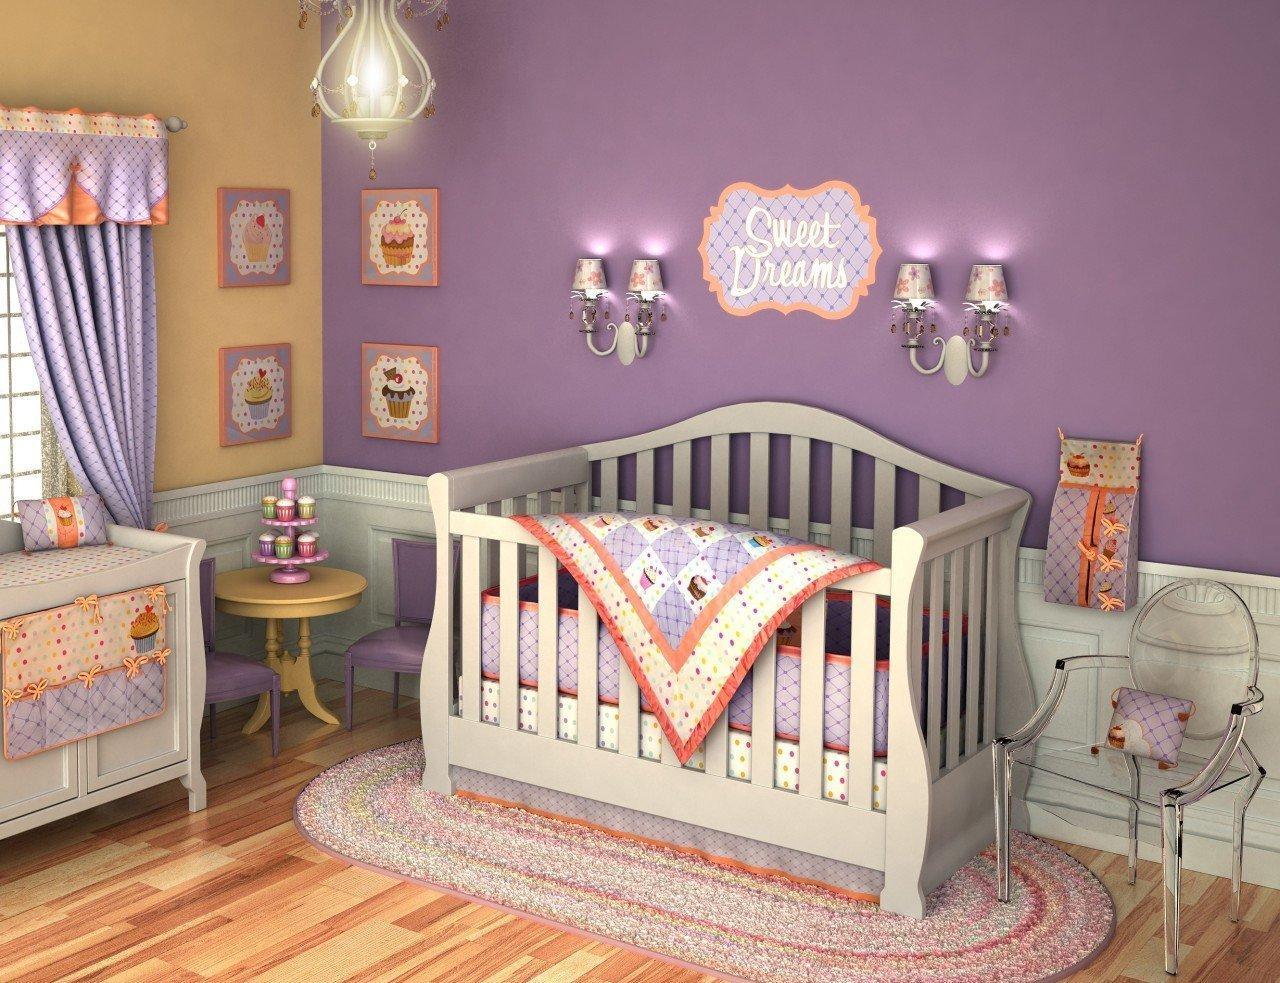 Baby bedroom. Комната для новорожденного. Детская комната для новорожденных. Красивые кроватки для новорожденных. Детская кроватка в интерьере.